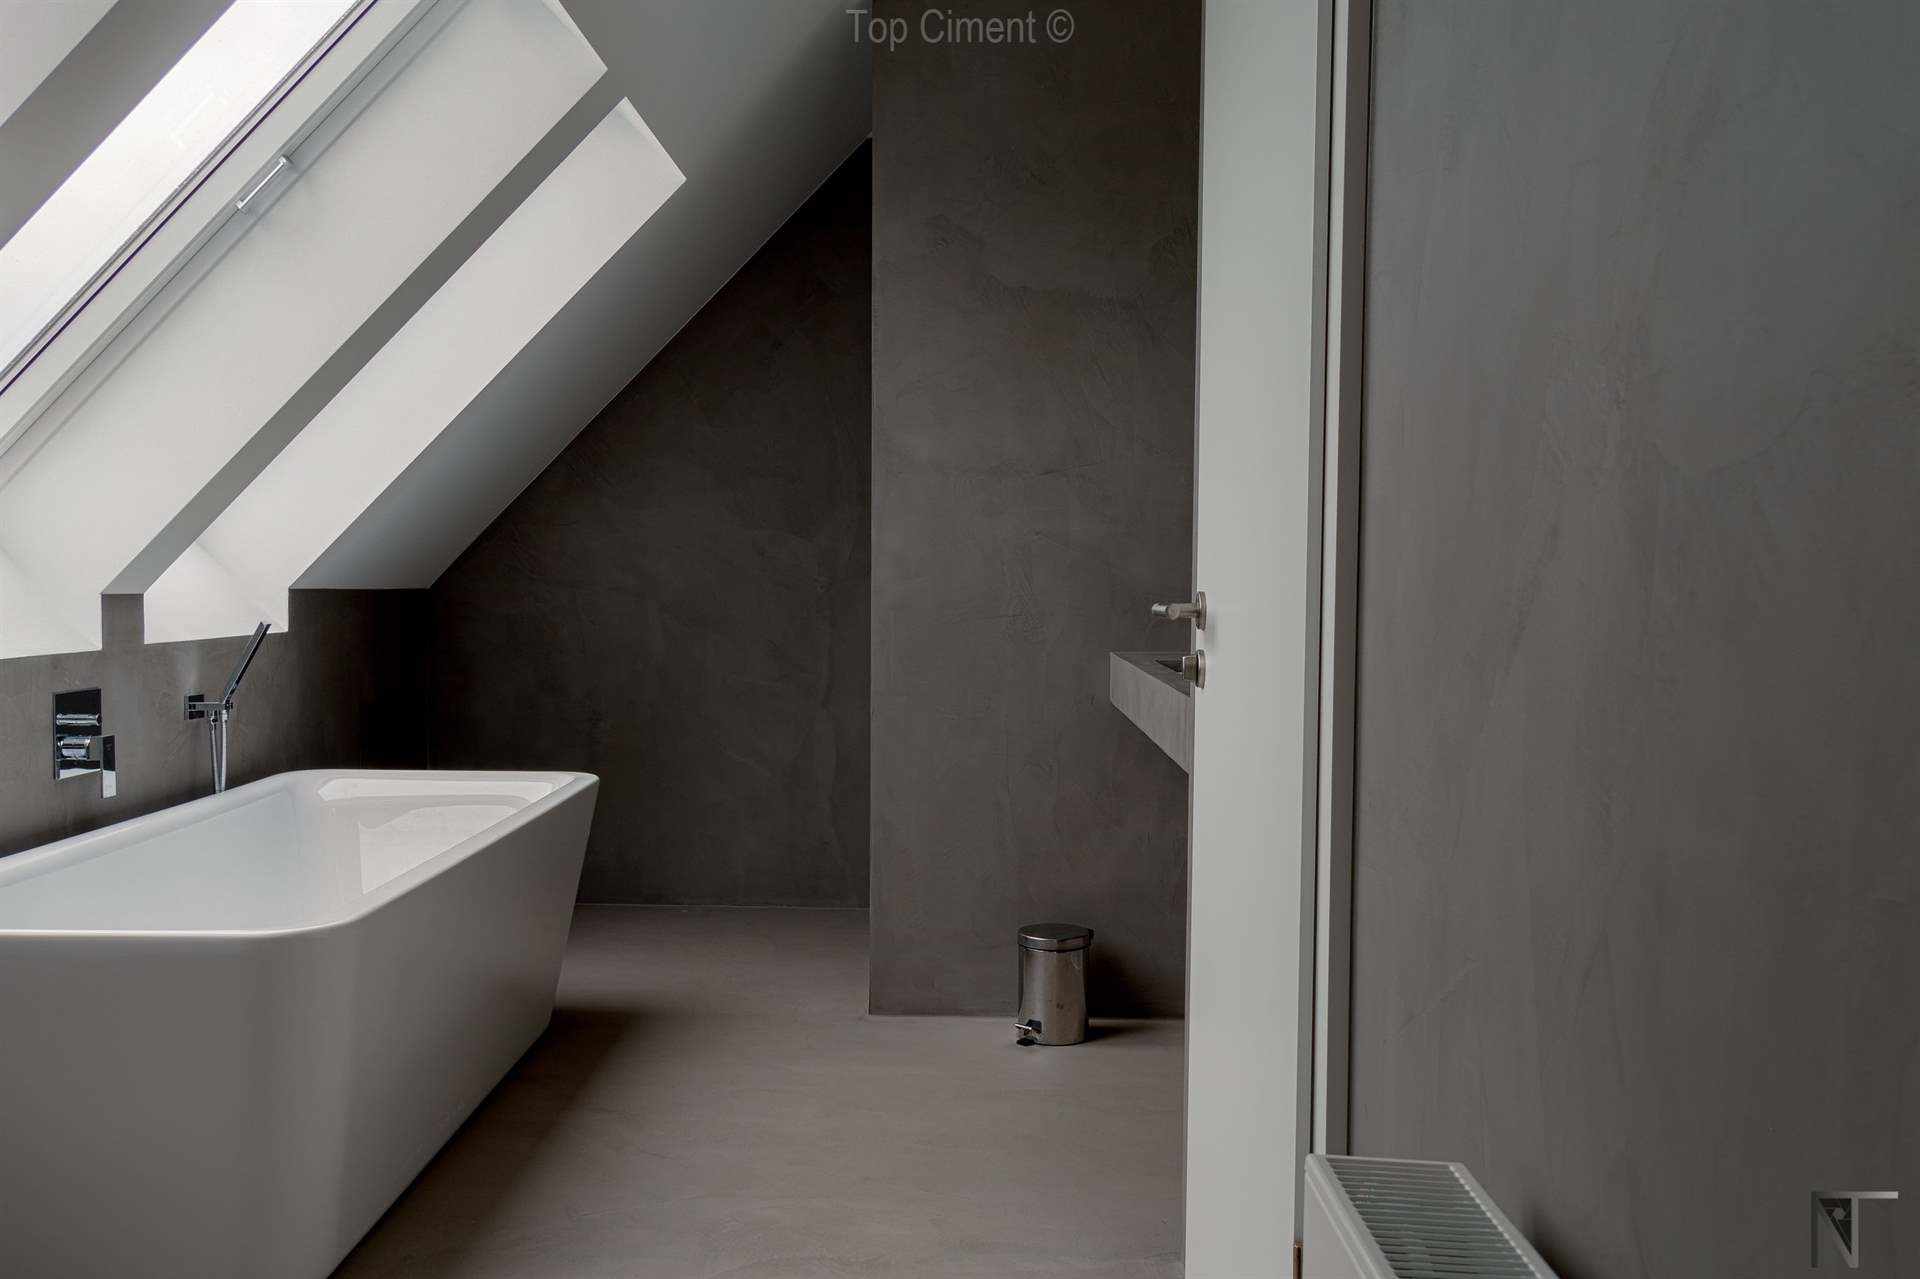 Casa de banho de azulejos reformada com microcimento Microfino Topciment